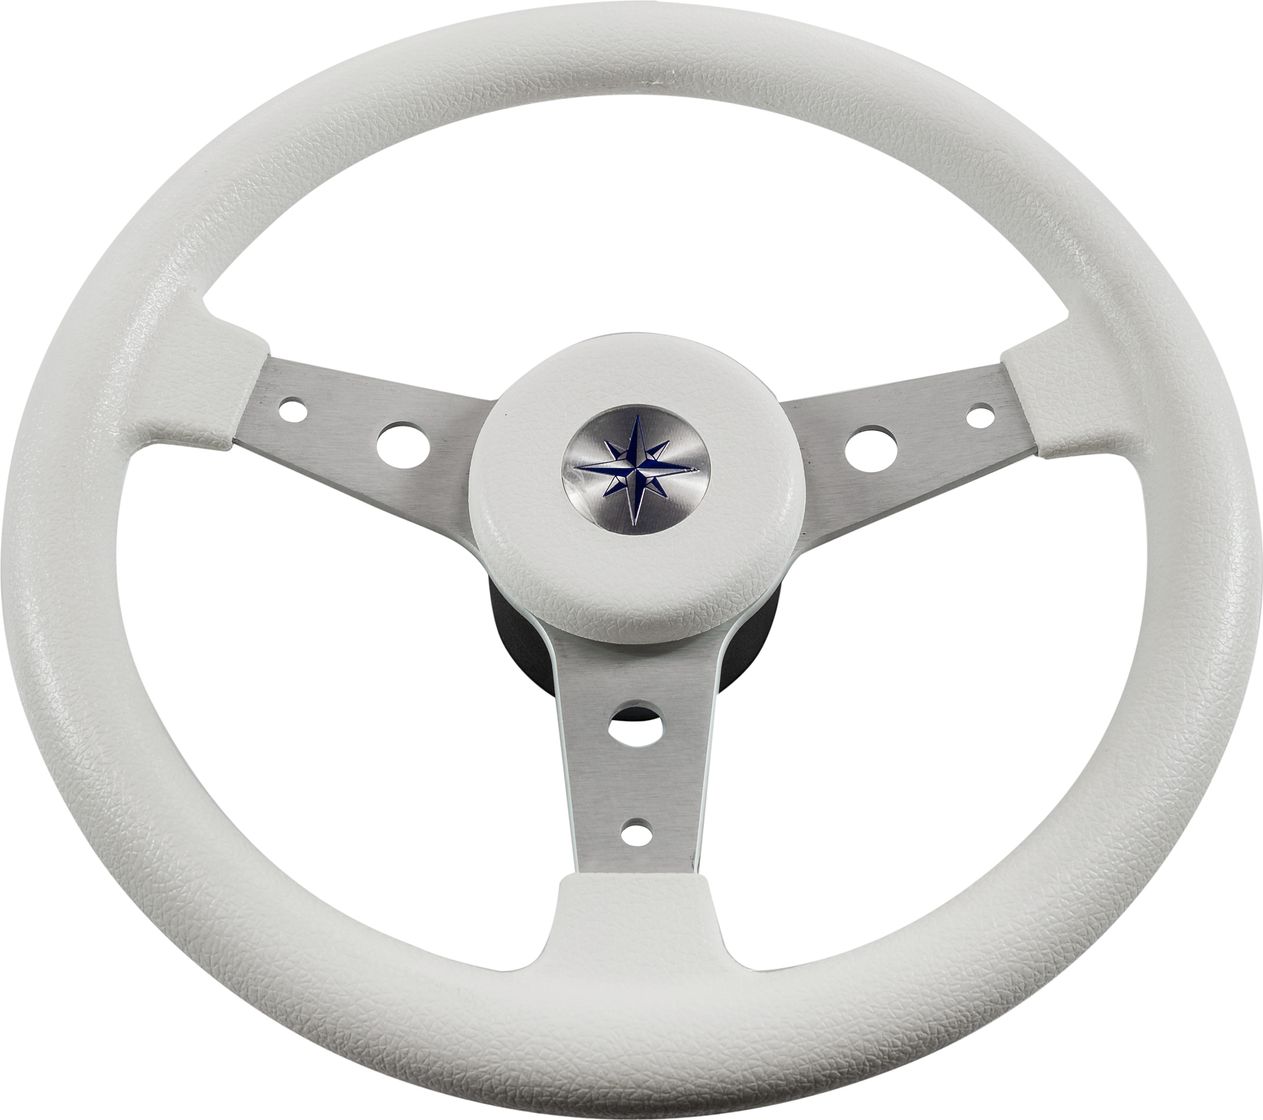 Рулевое колесо DELFINO обод белый,спицы серебряные д. 340 мм VN70401-08 рулевое колесо leader tanegum белый обод серебряные спицы д 400 мм vn7400 08